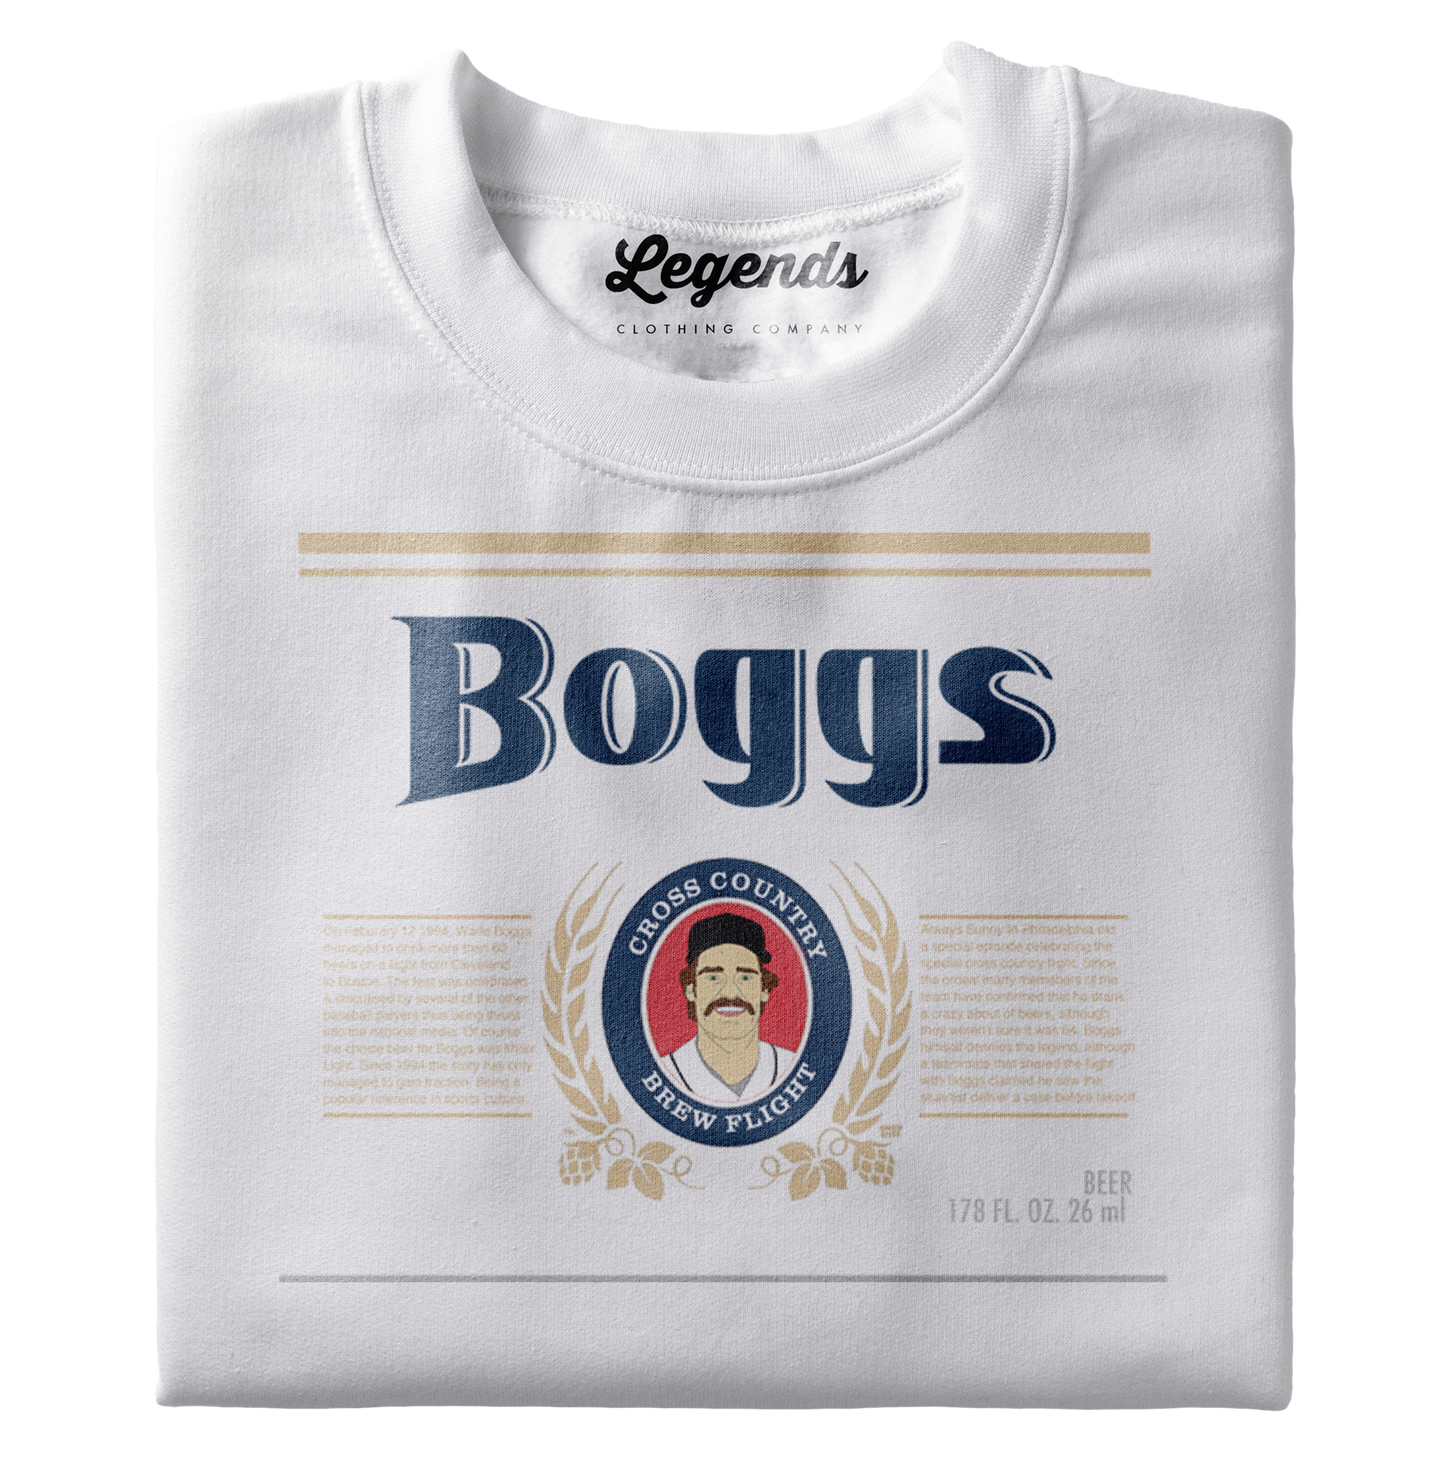 Legends Boggs Beer T-Shirt